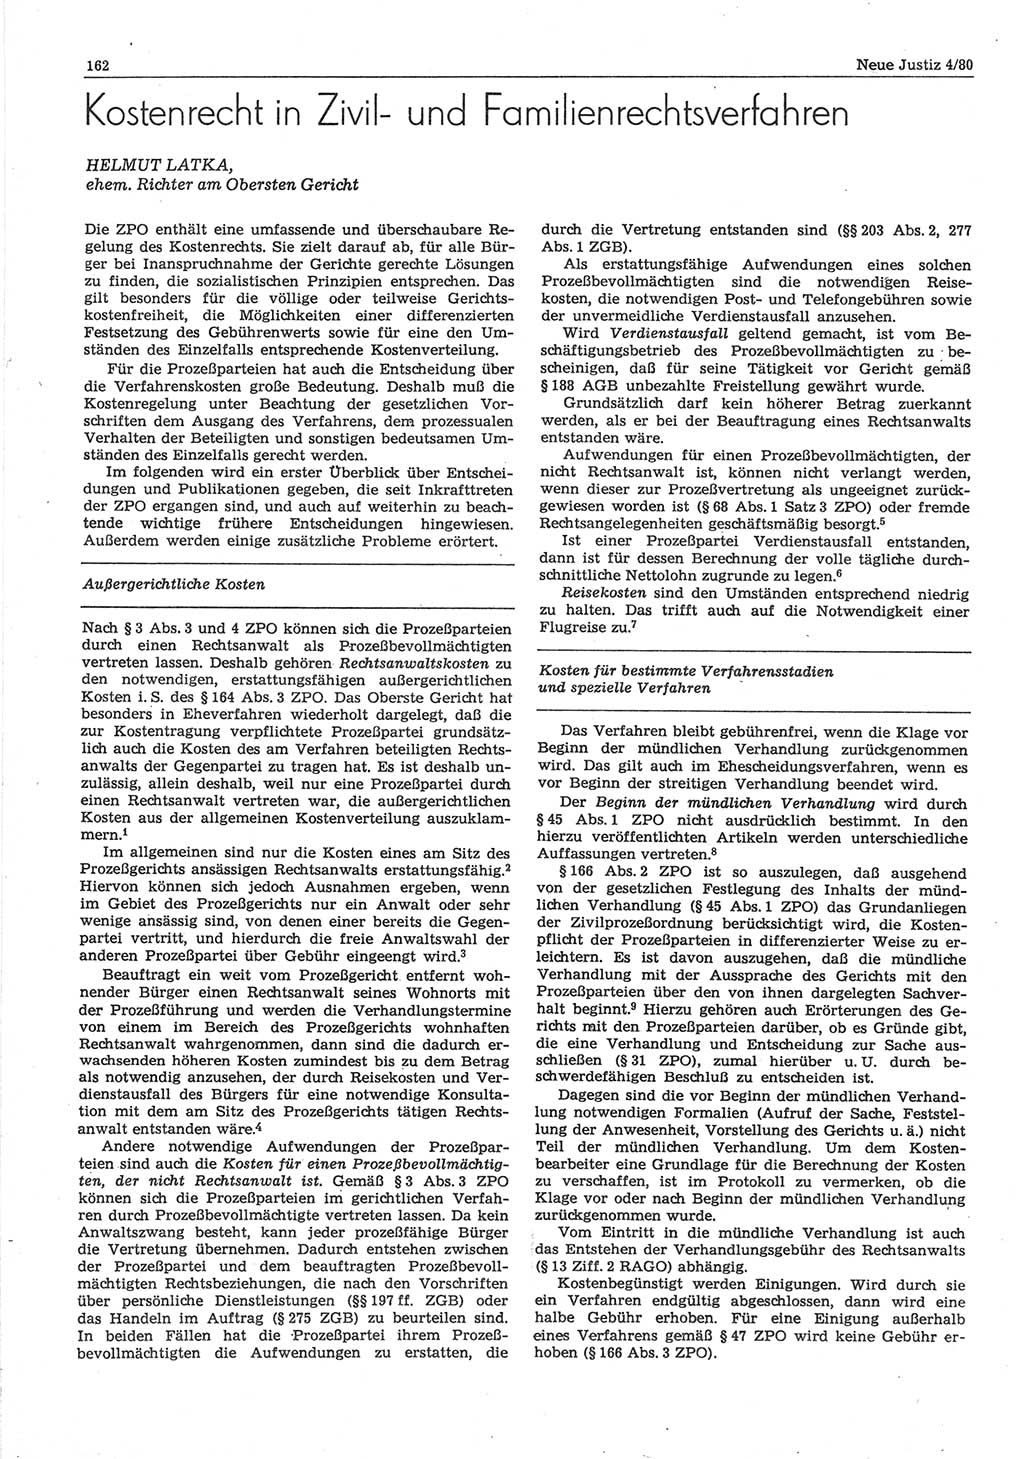 Neue Justiz (NJ), Zeitschrift für sozialistisches Recht und Gesetzlichkeit [Deutsche Demokratische Republik (DDR)], 34. Jahrgang 1980, Seite 162 (NJ DDR 1980, S. 162)